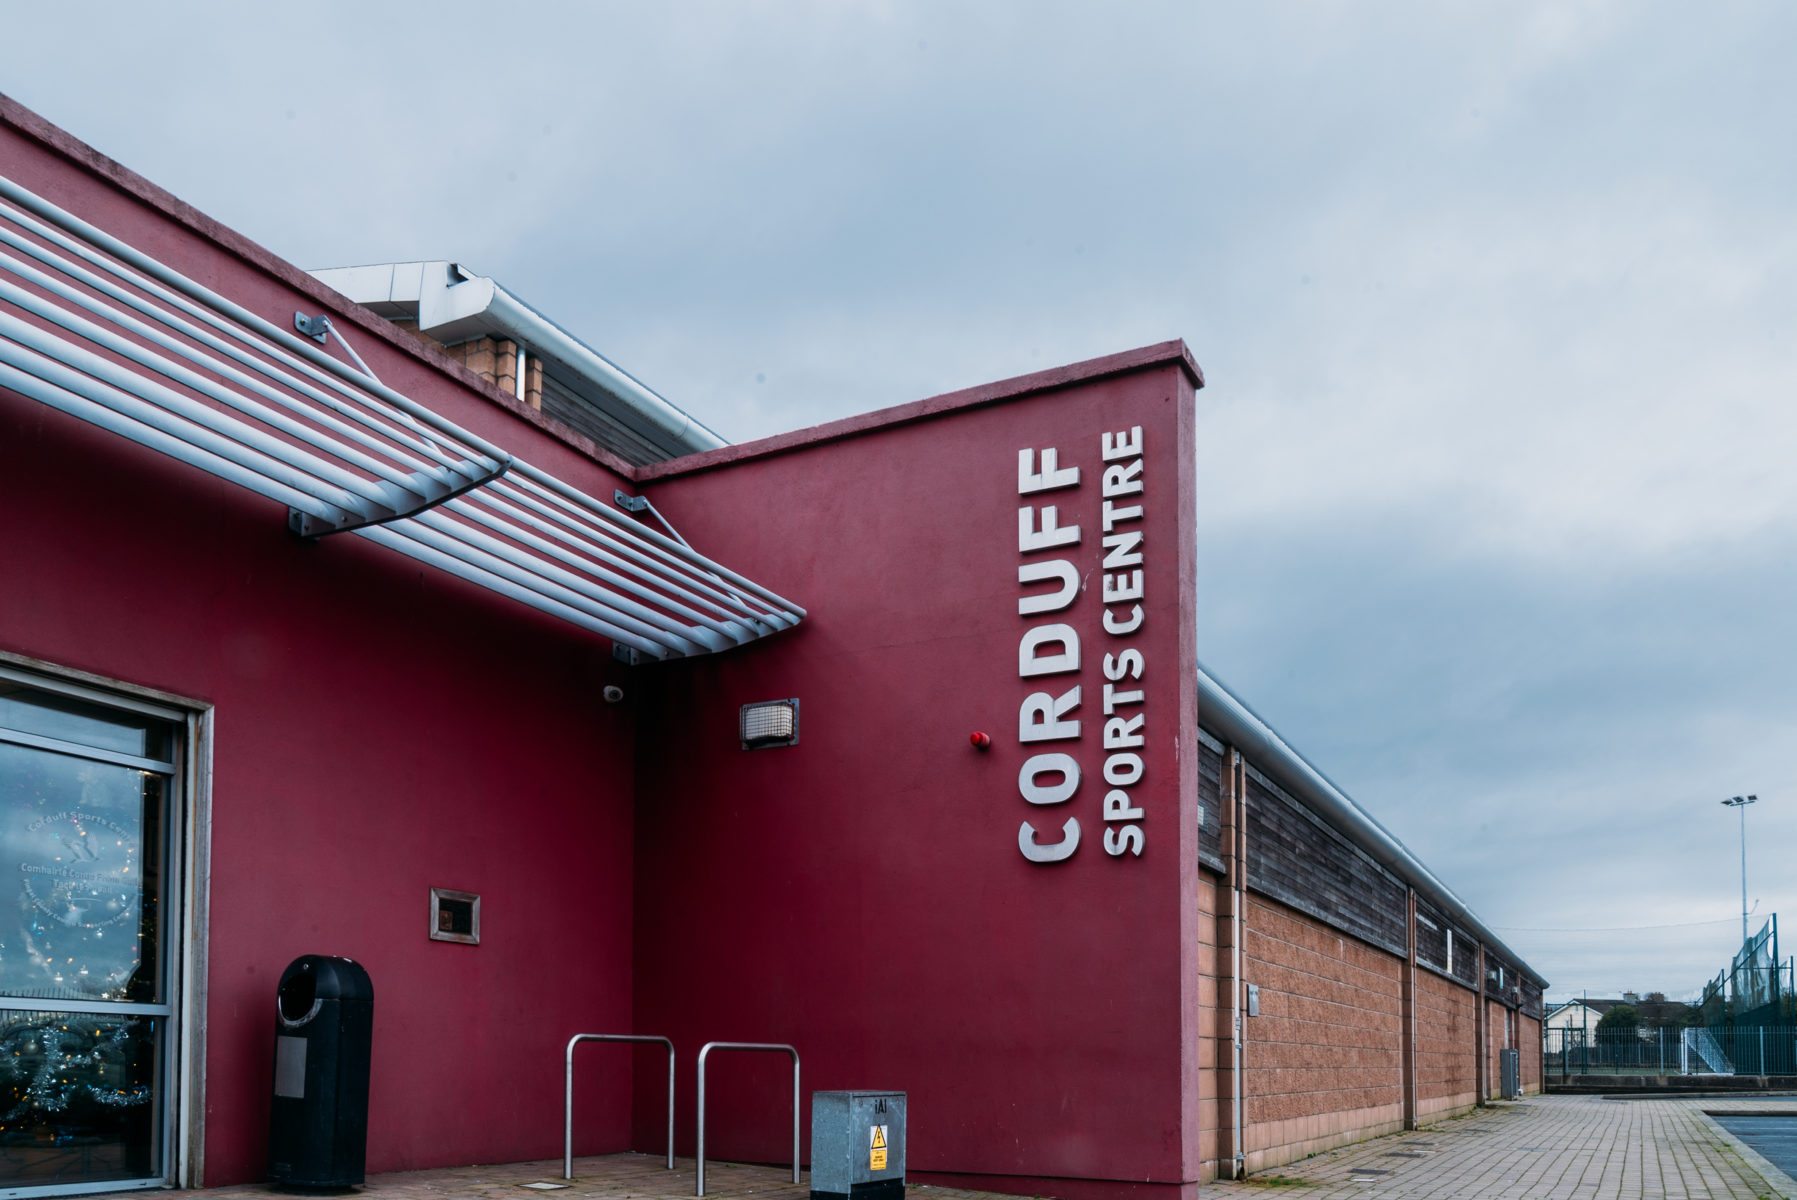 Corduff Sports Centre